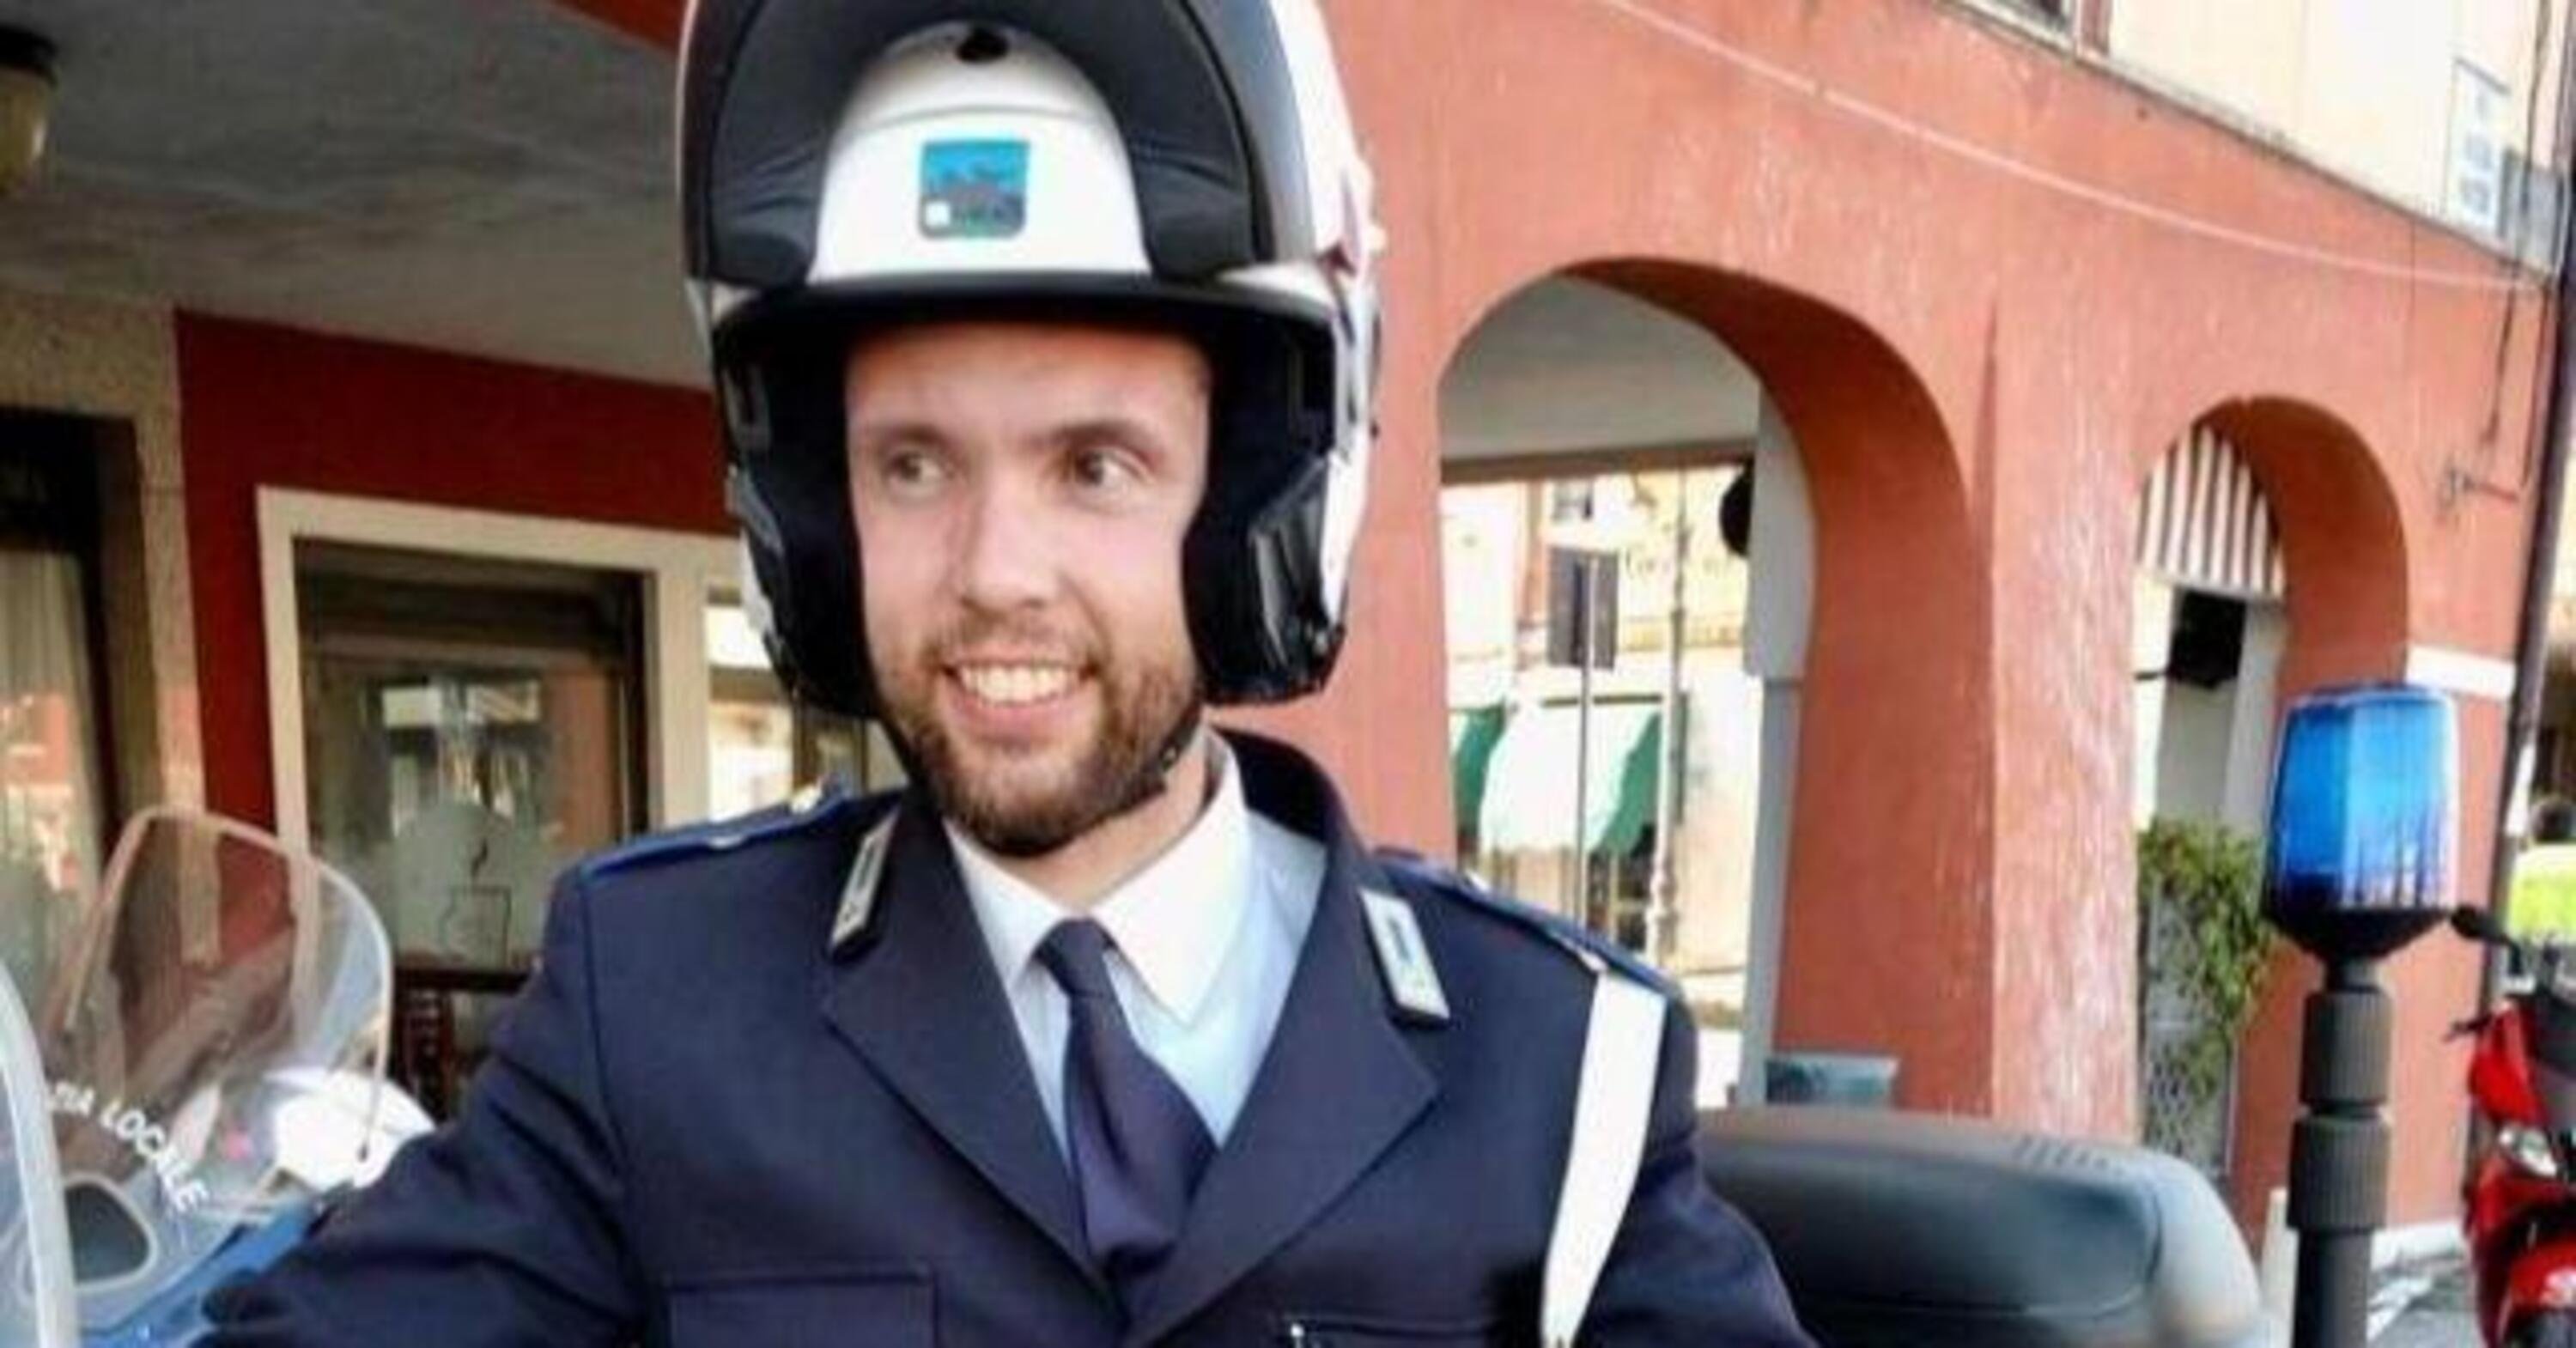 Padova: muore agente investito in moto, stava scortando la squadra di Alex Zanardi